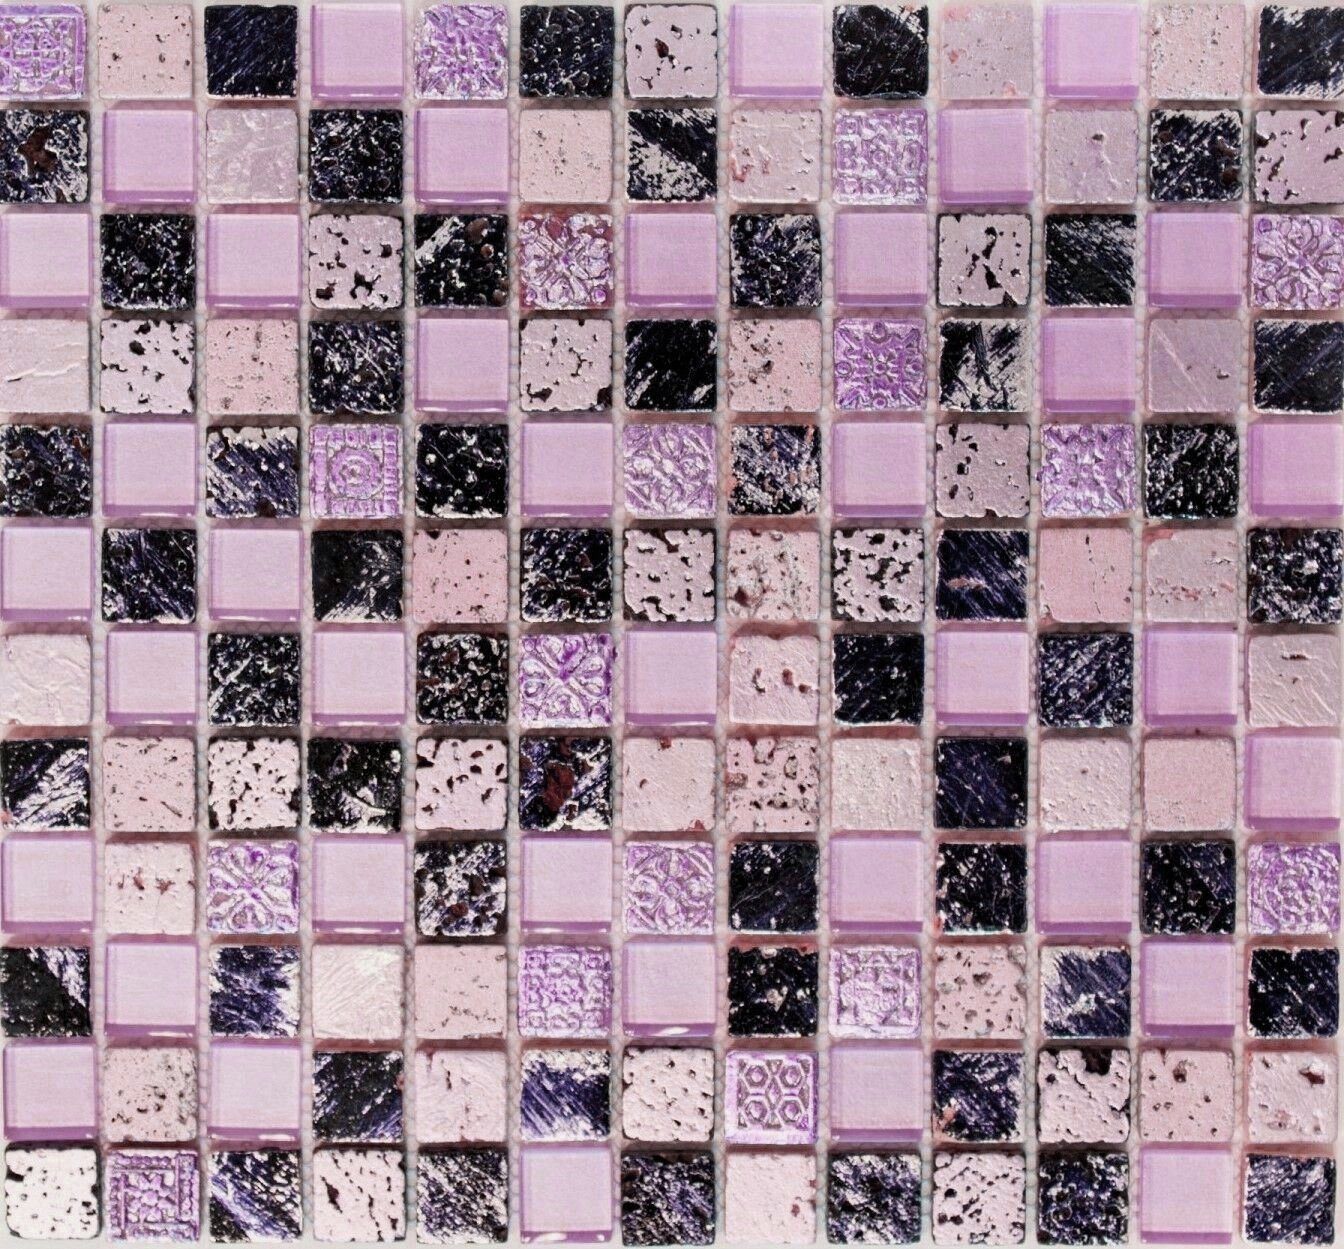 Mosani Mosaikfliesen Kunststein Rustikal Mosaikfliese Glasmosaik Resin pink rose